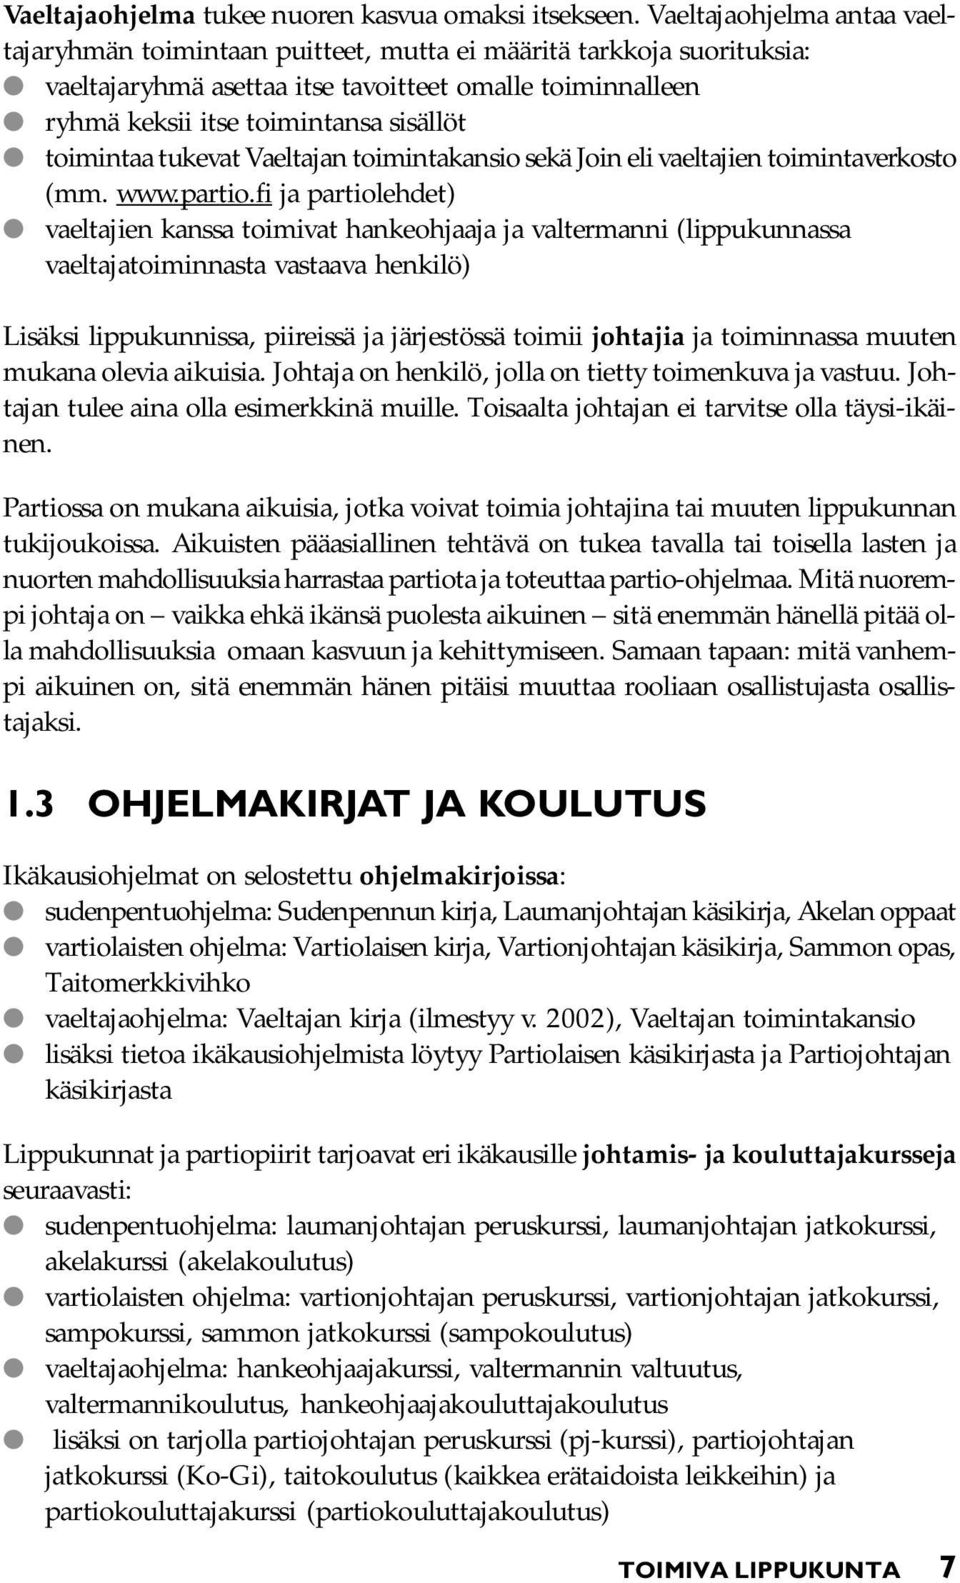 toimintaa tukevat Vaeltajan toimintakansio sekä Join eli vaeltajien toimintaverkosto (mm. www.partio.